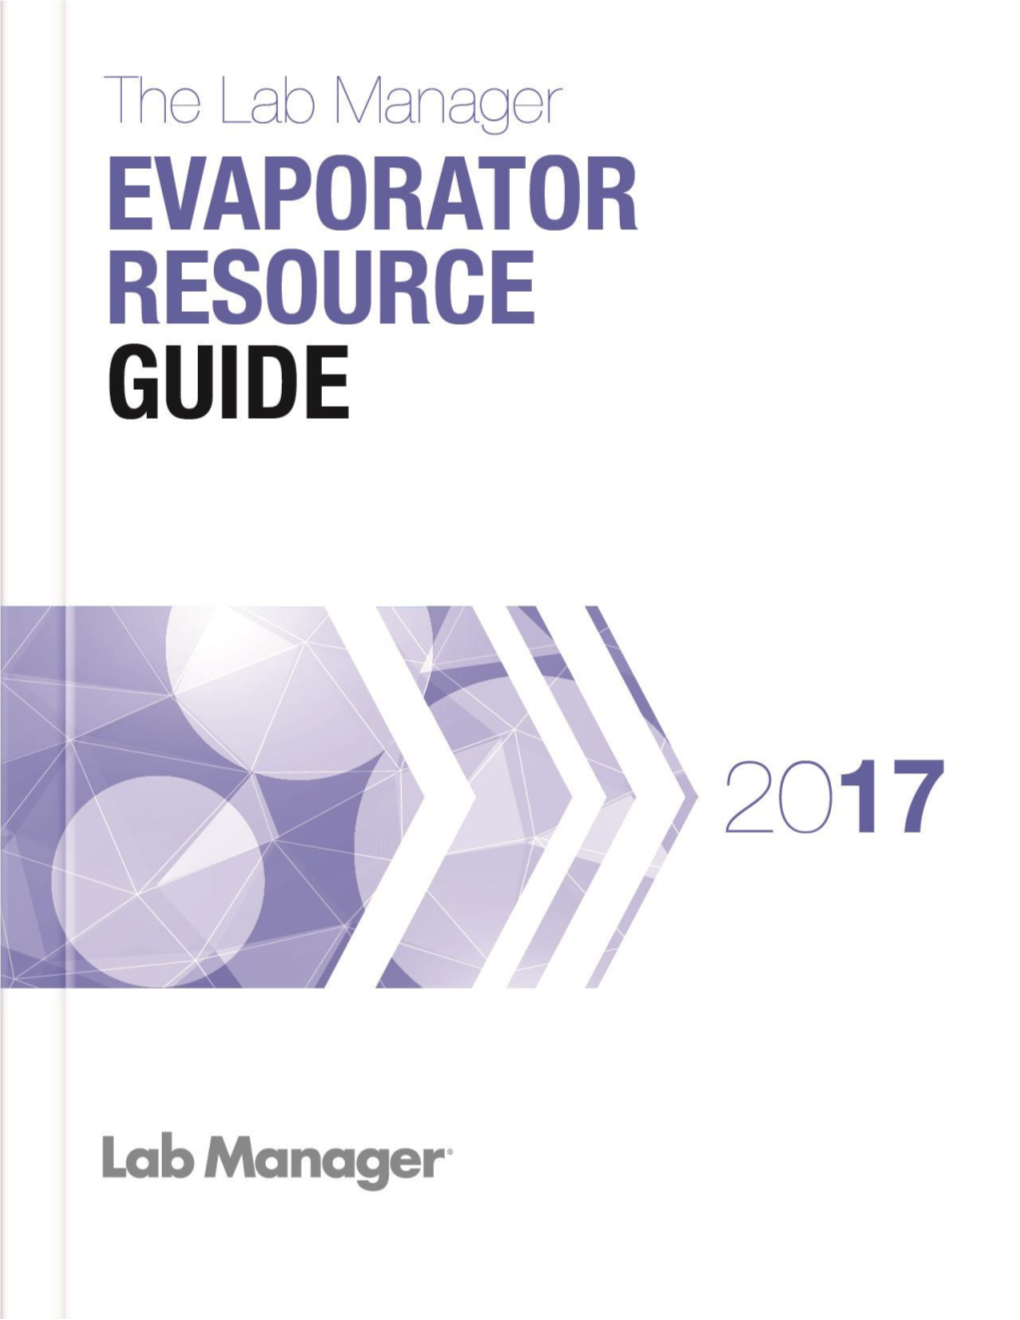 Evaporator Ebook 2017